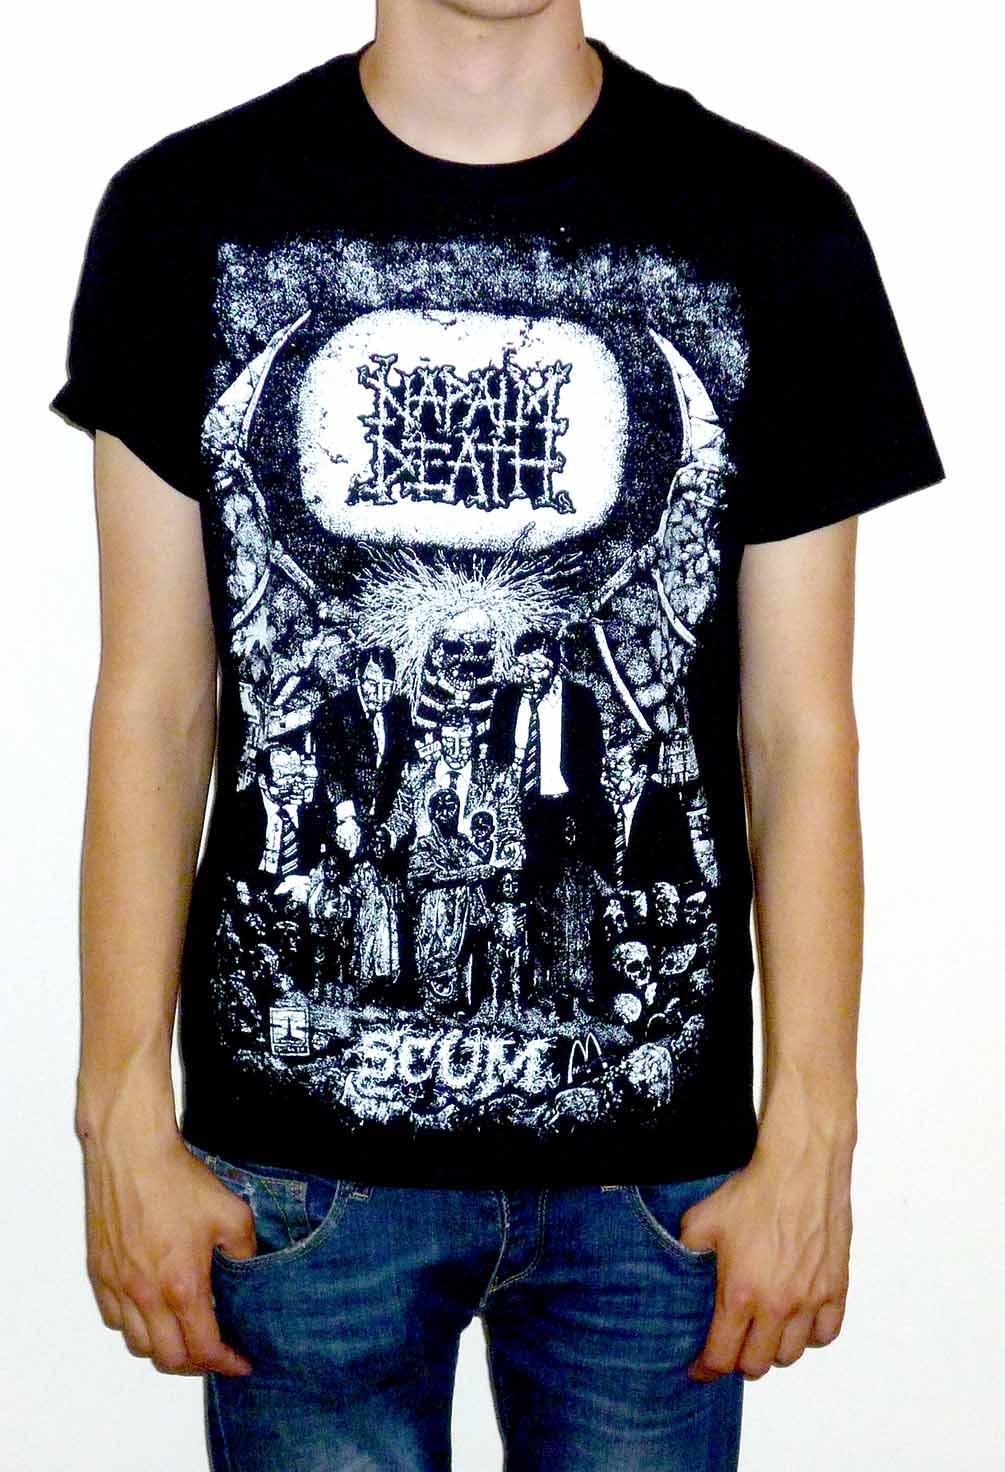 Napalm Death "Scum" Vintage Print T-shirt